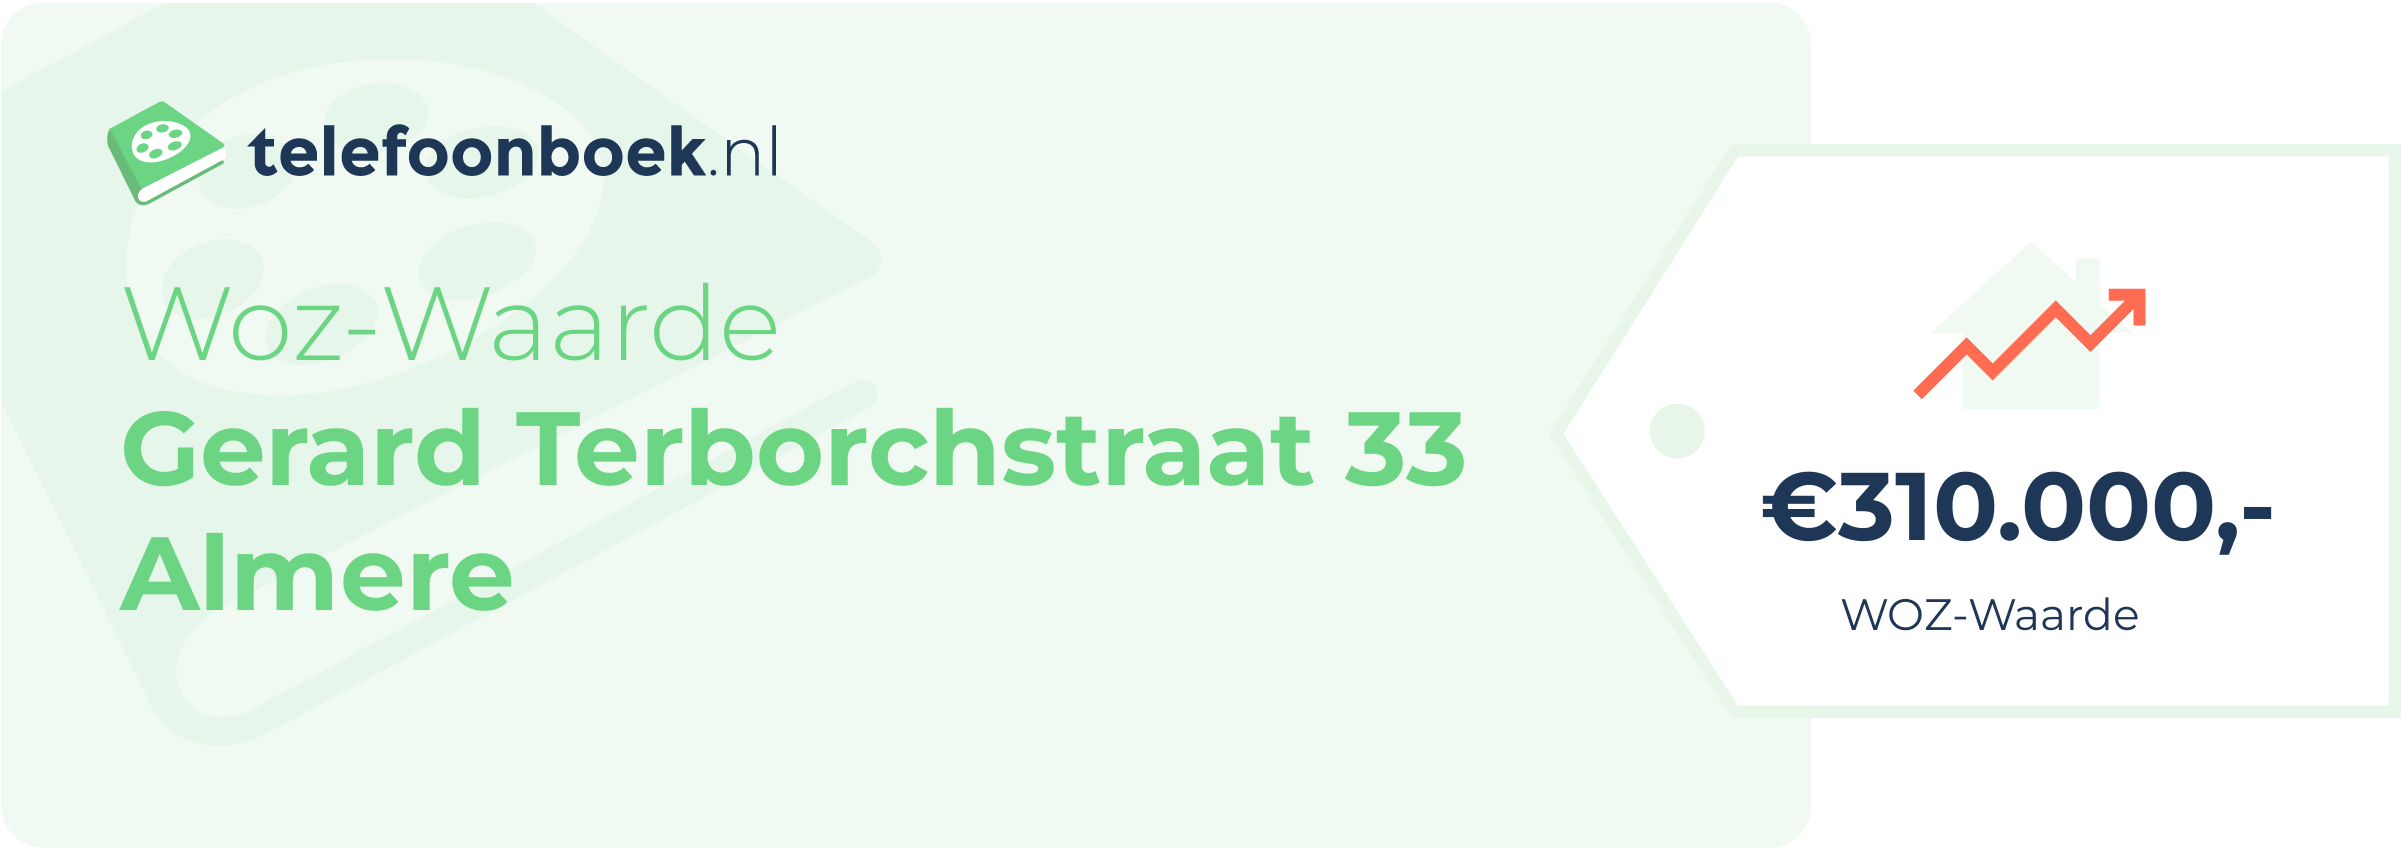 WOZ-waarde Gerard Terborchstraat 33 Almere